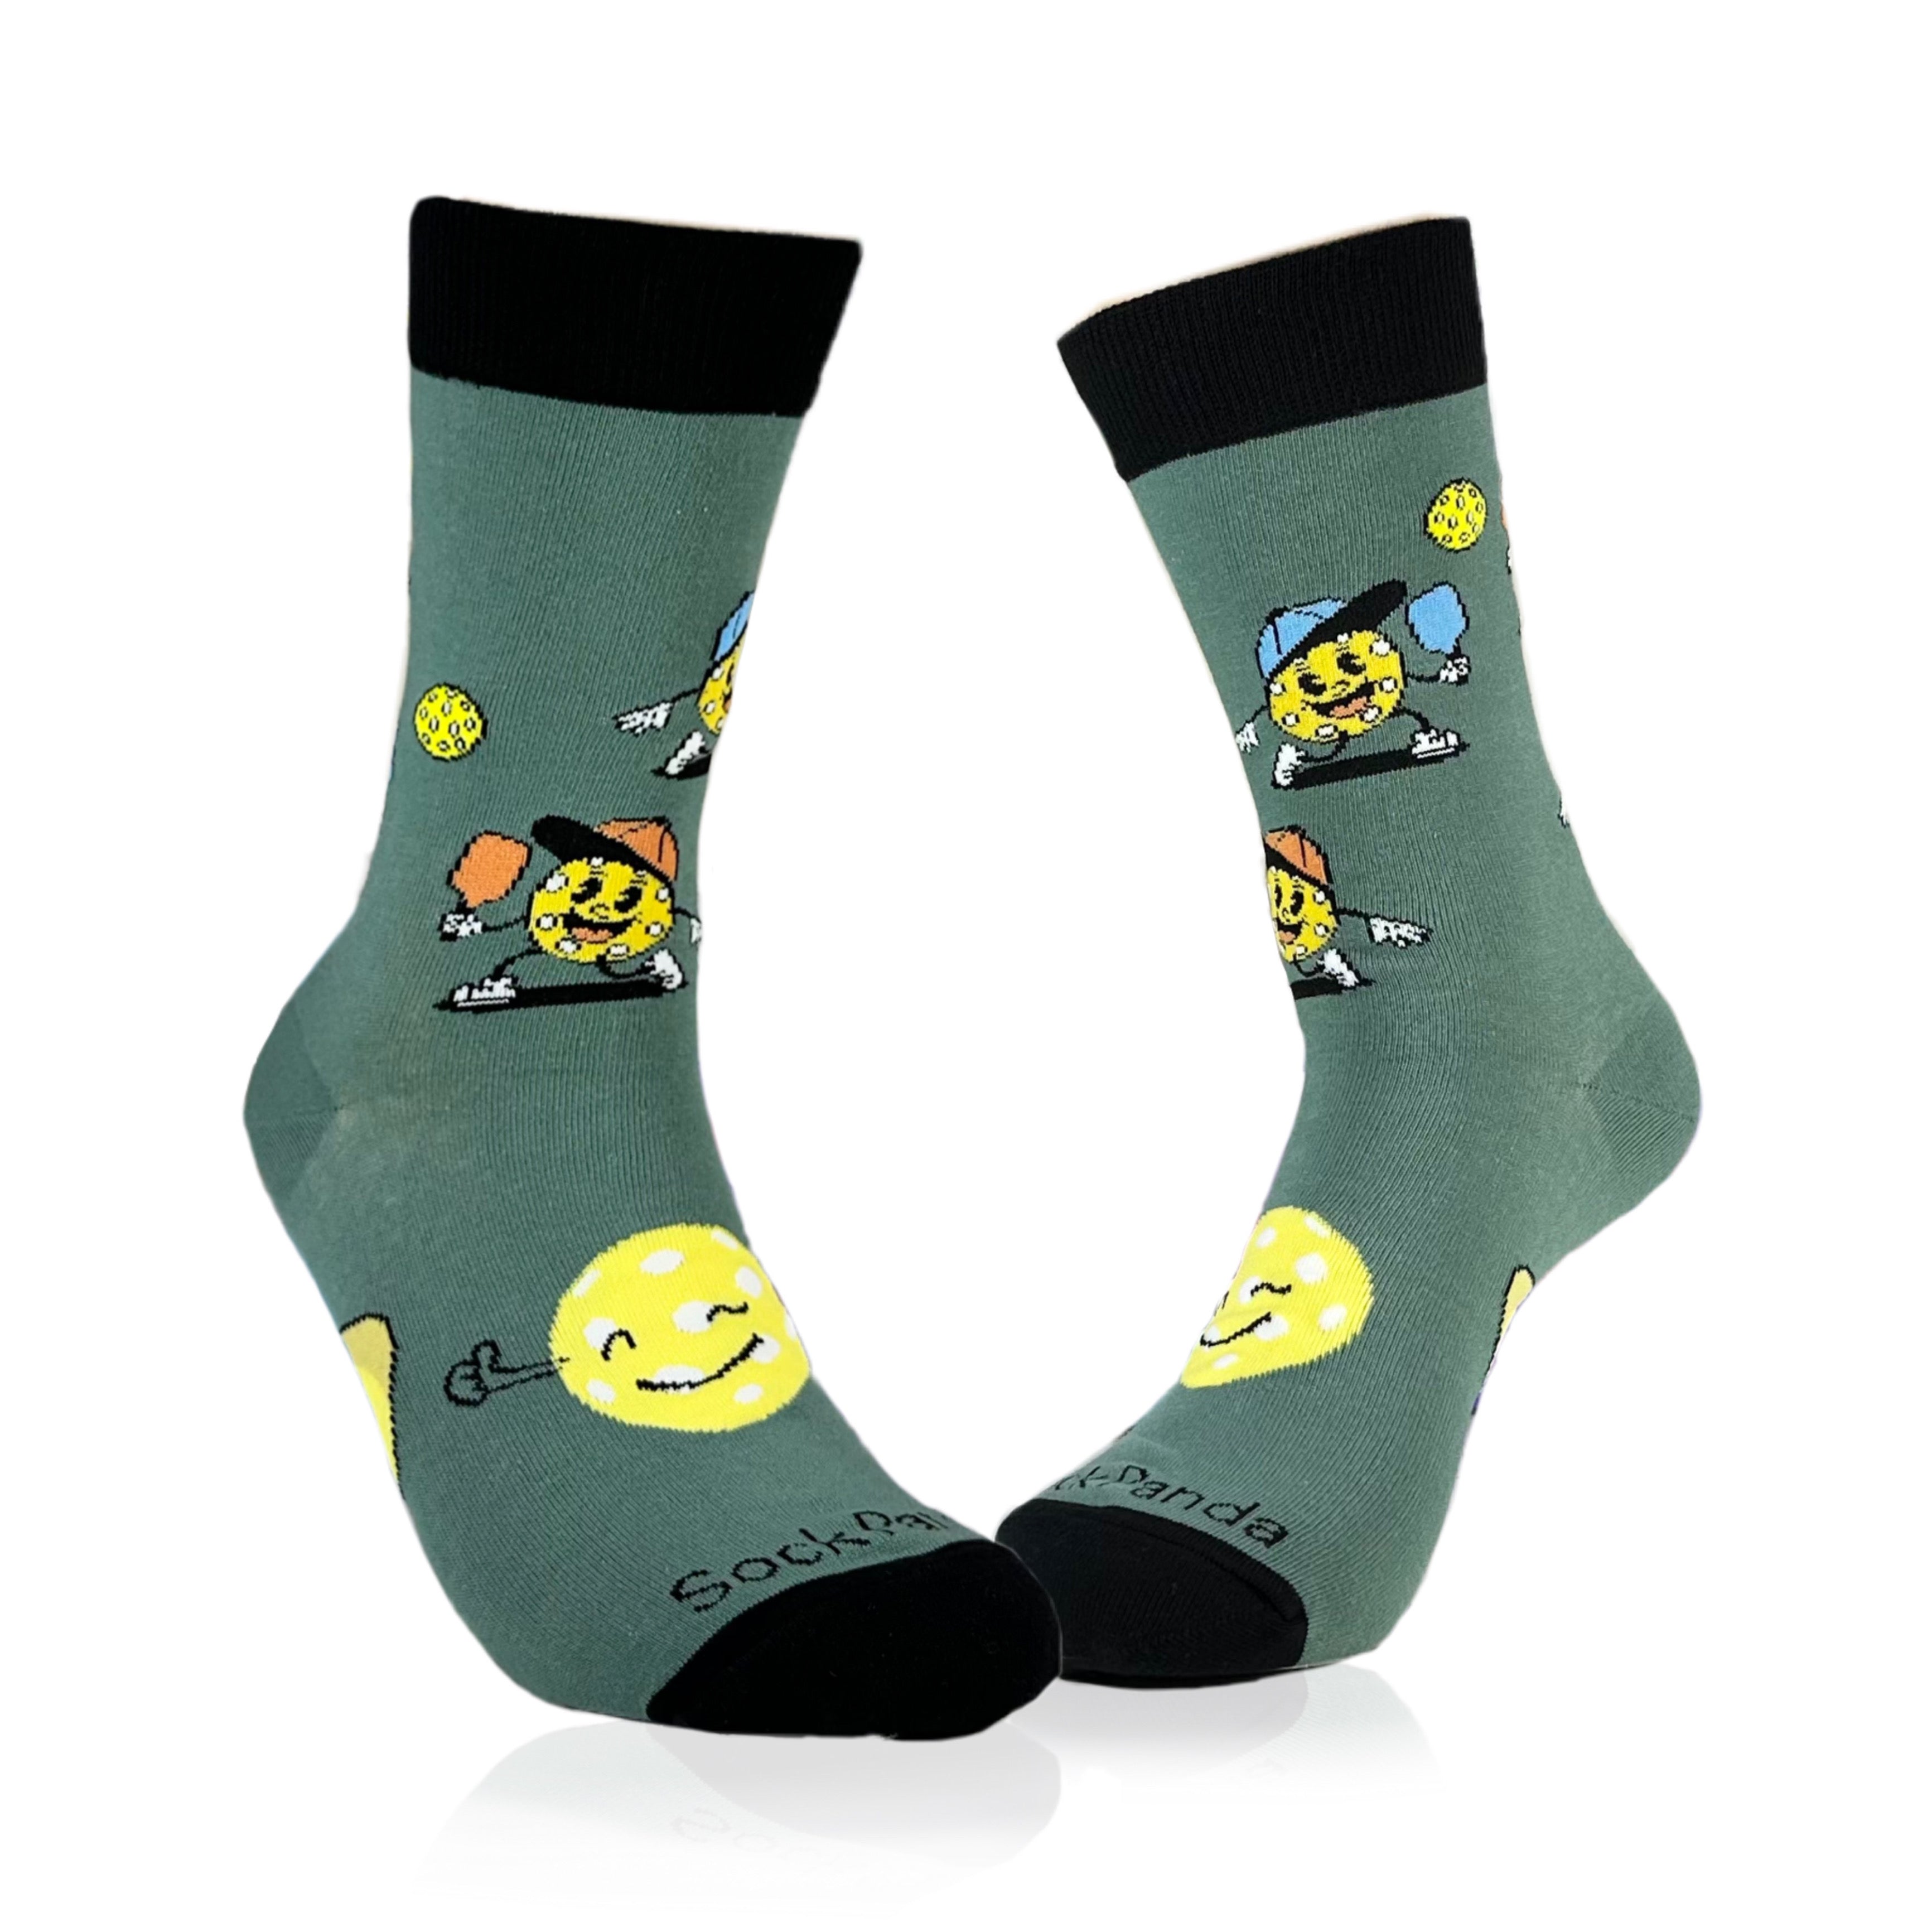 Pickleball Socks from the Sock Panda